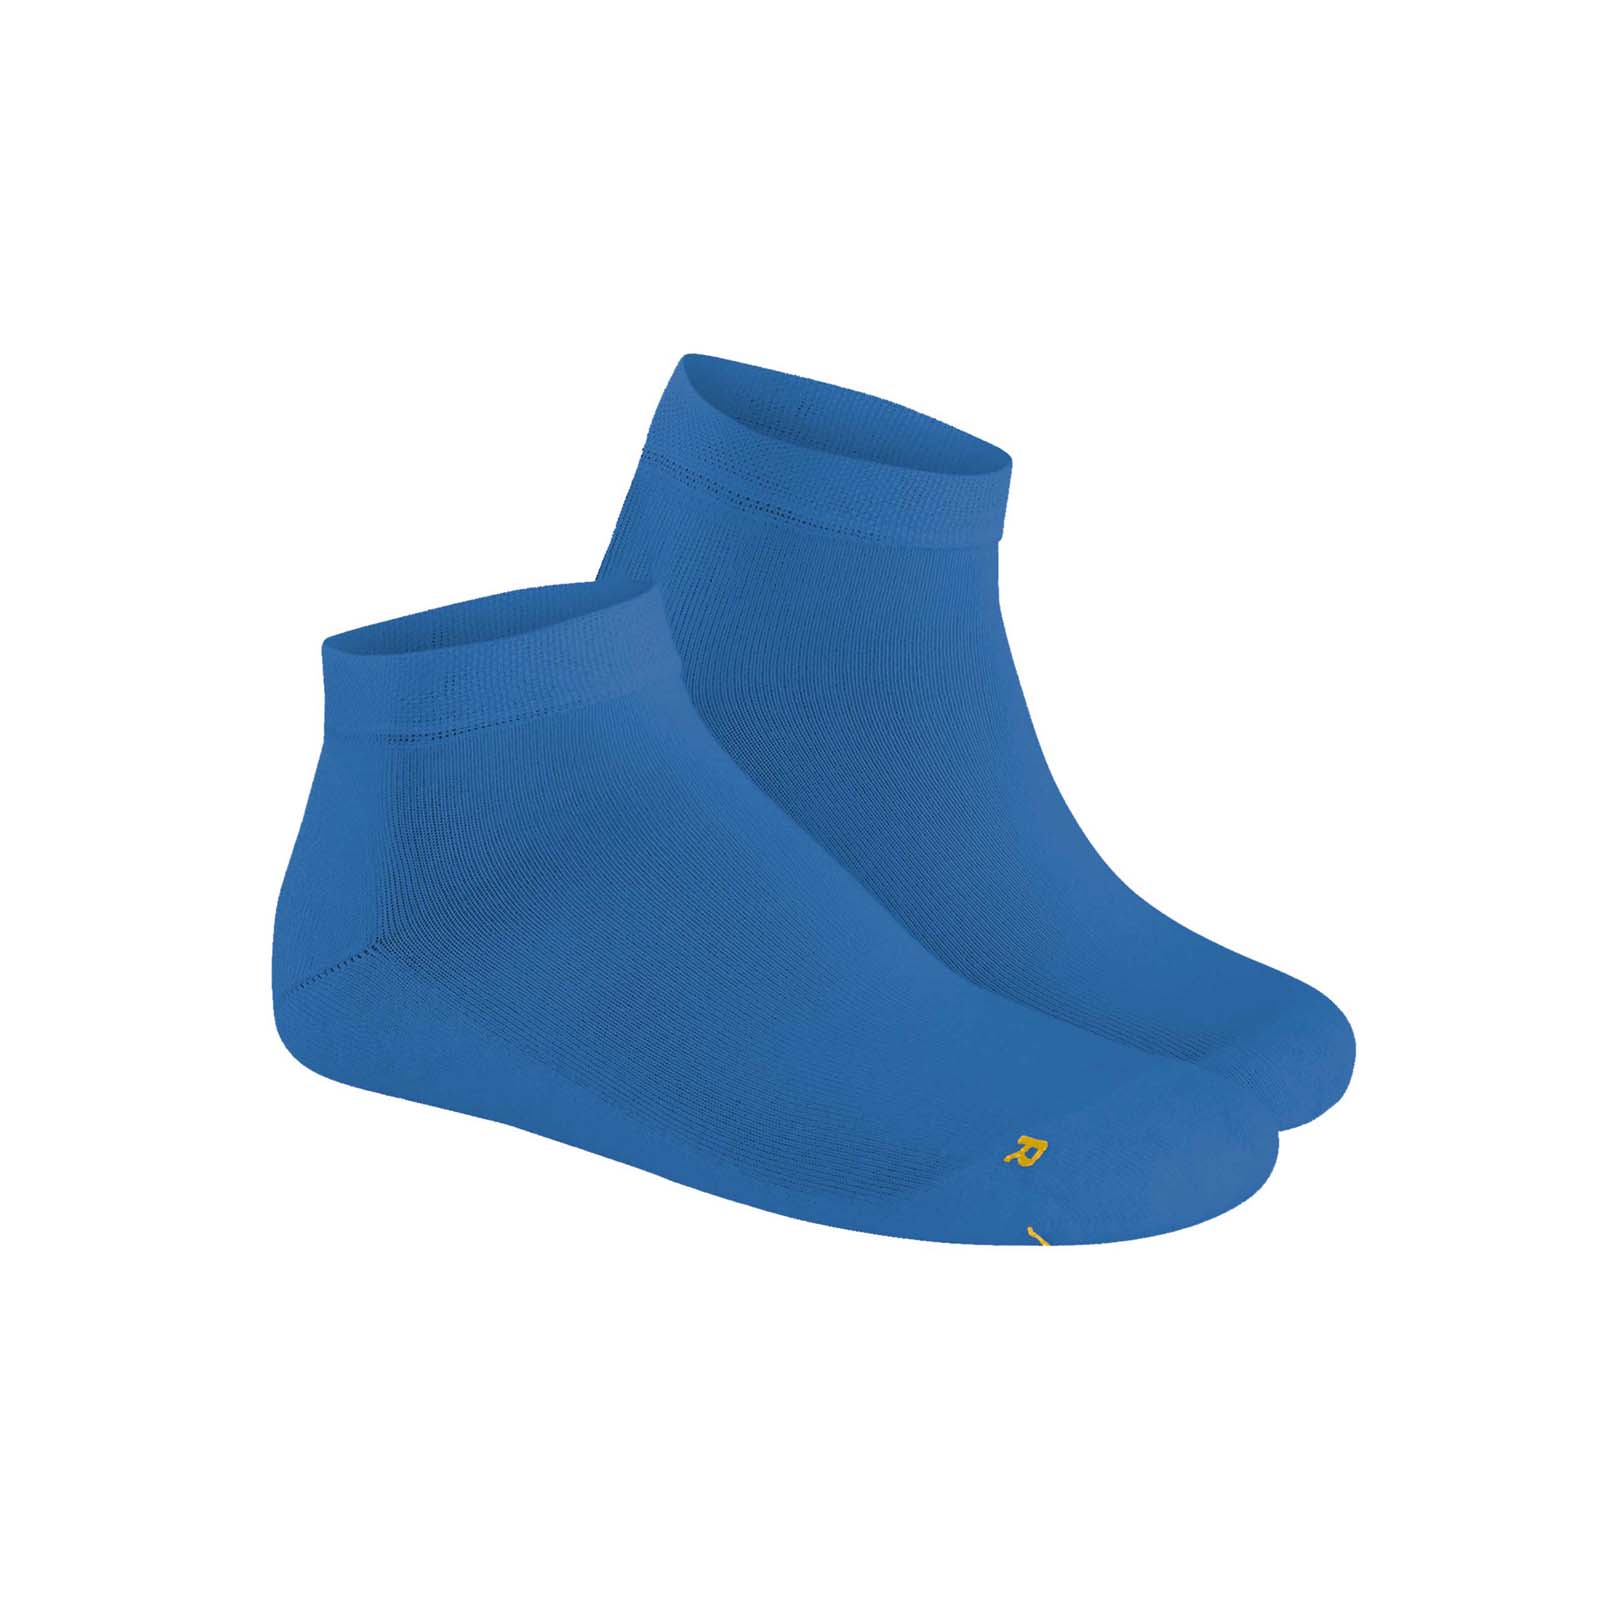 HUDSON Herren AIR PLUSH -  39/42 - Herren Sneaker Socken mit anatomisch geformter Plüschsohle - Dodger (Blau)